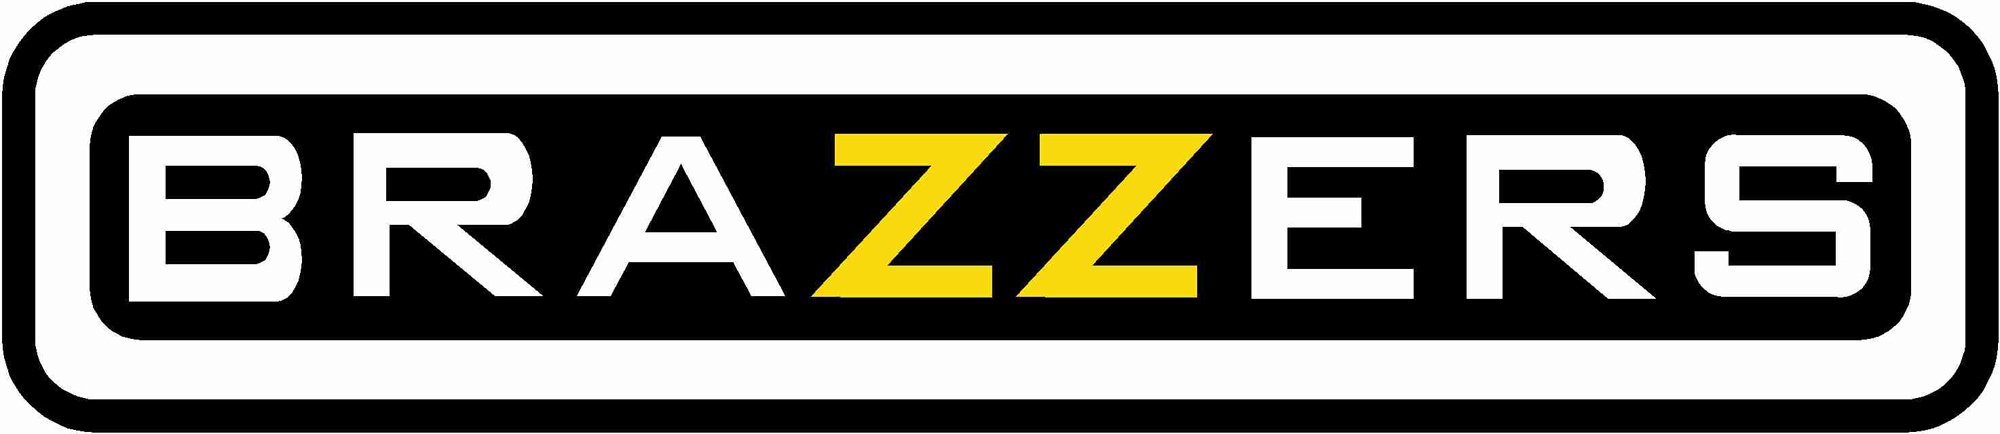 Logo Brazzers.